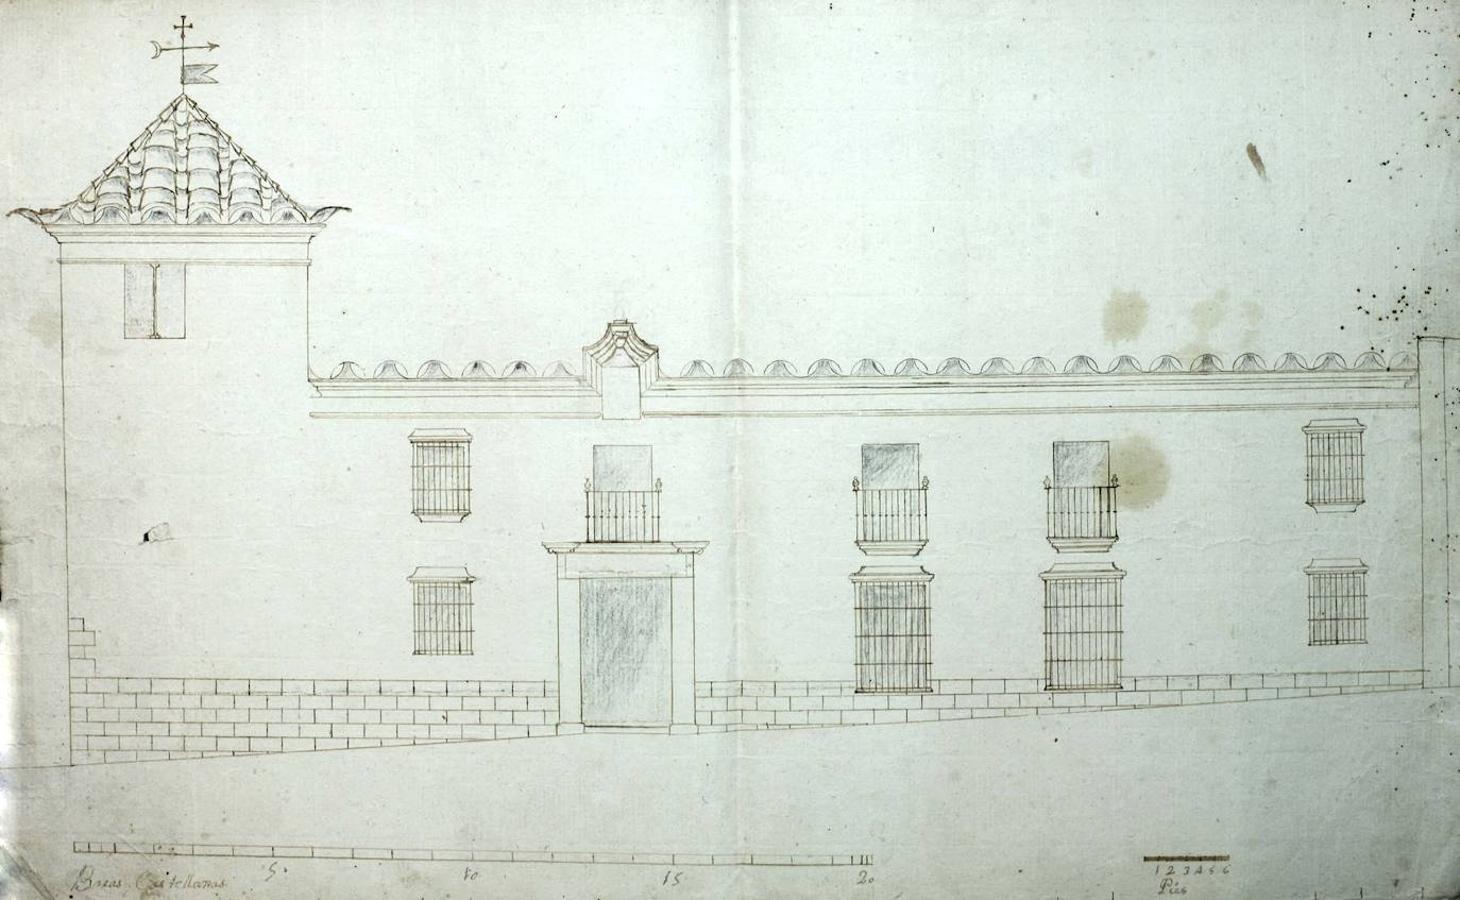 Plano de la Casa de los Moscosos en Badajoz, en el siglo XVIII. Donado por Rafael Rodríguez-Moñino a la Biblioteca Pública de Cáceres.